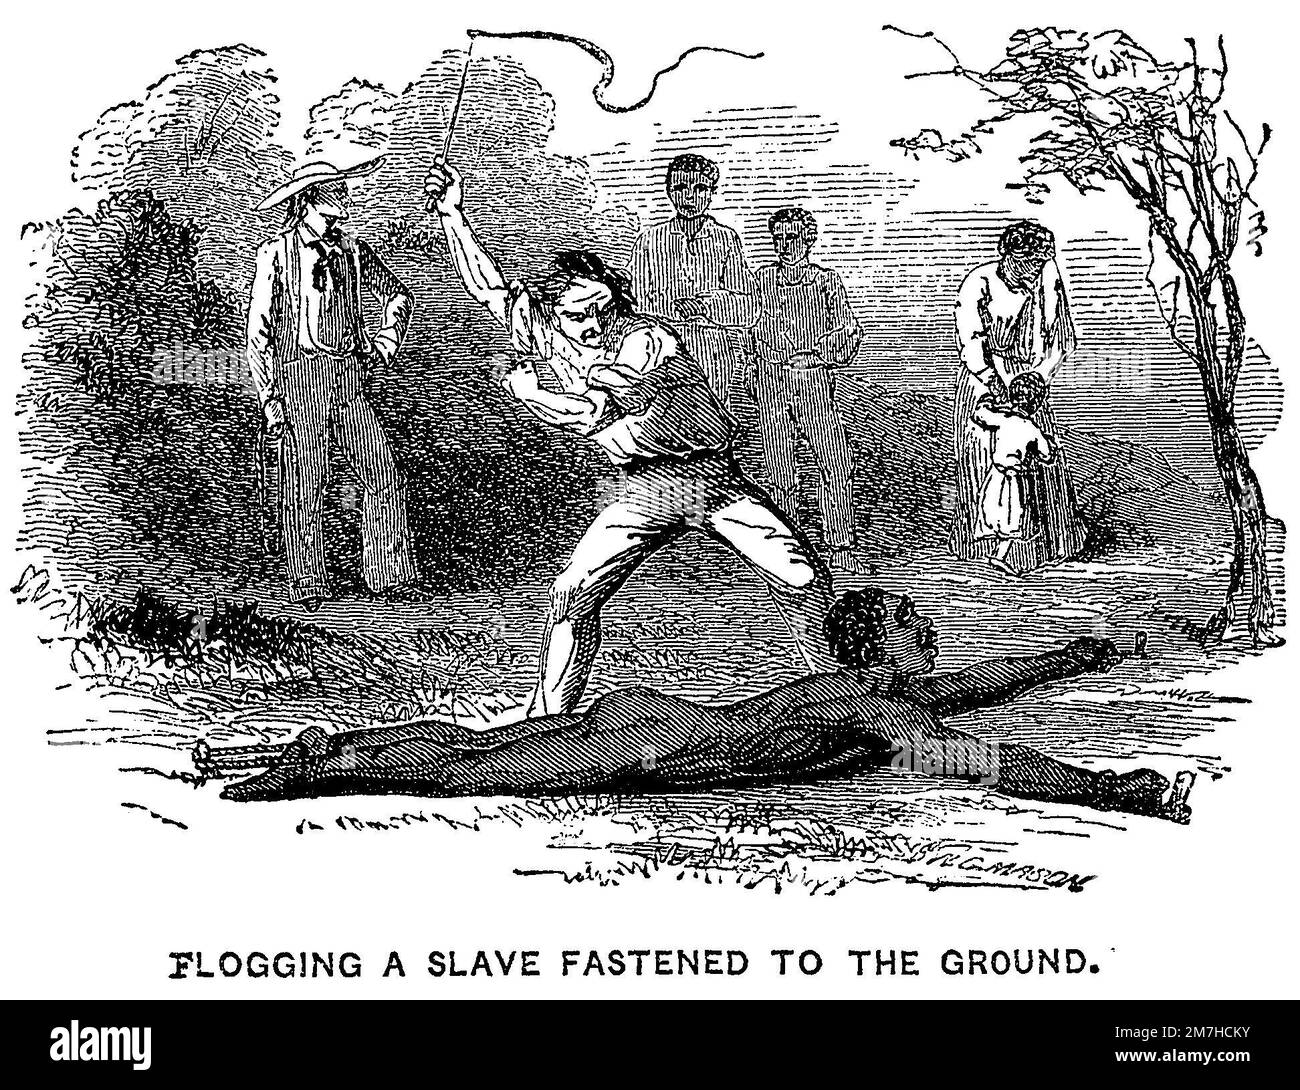 Une illustration de la flagellation publique d'un esclave lié au sol à partir d'une brochure de 1853 sur la lutte contre l'esclavage Banque D'Images